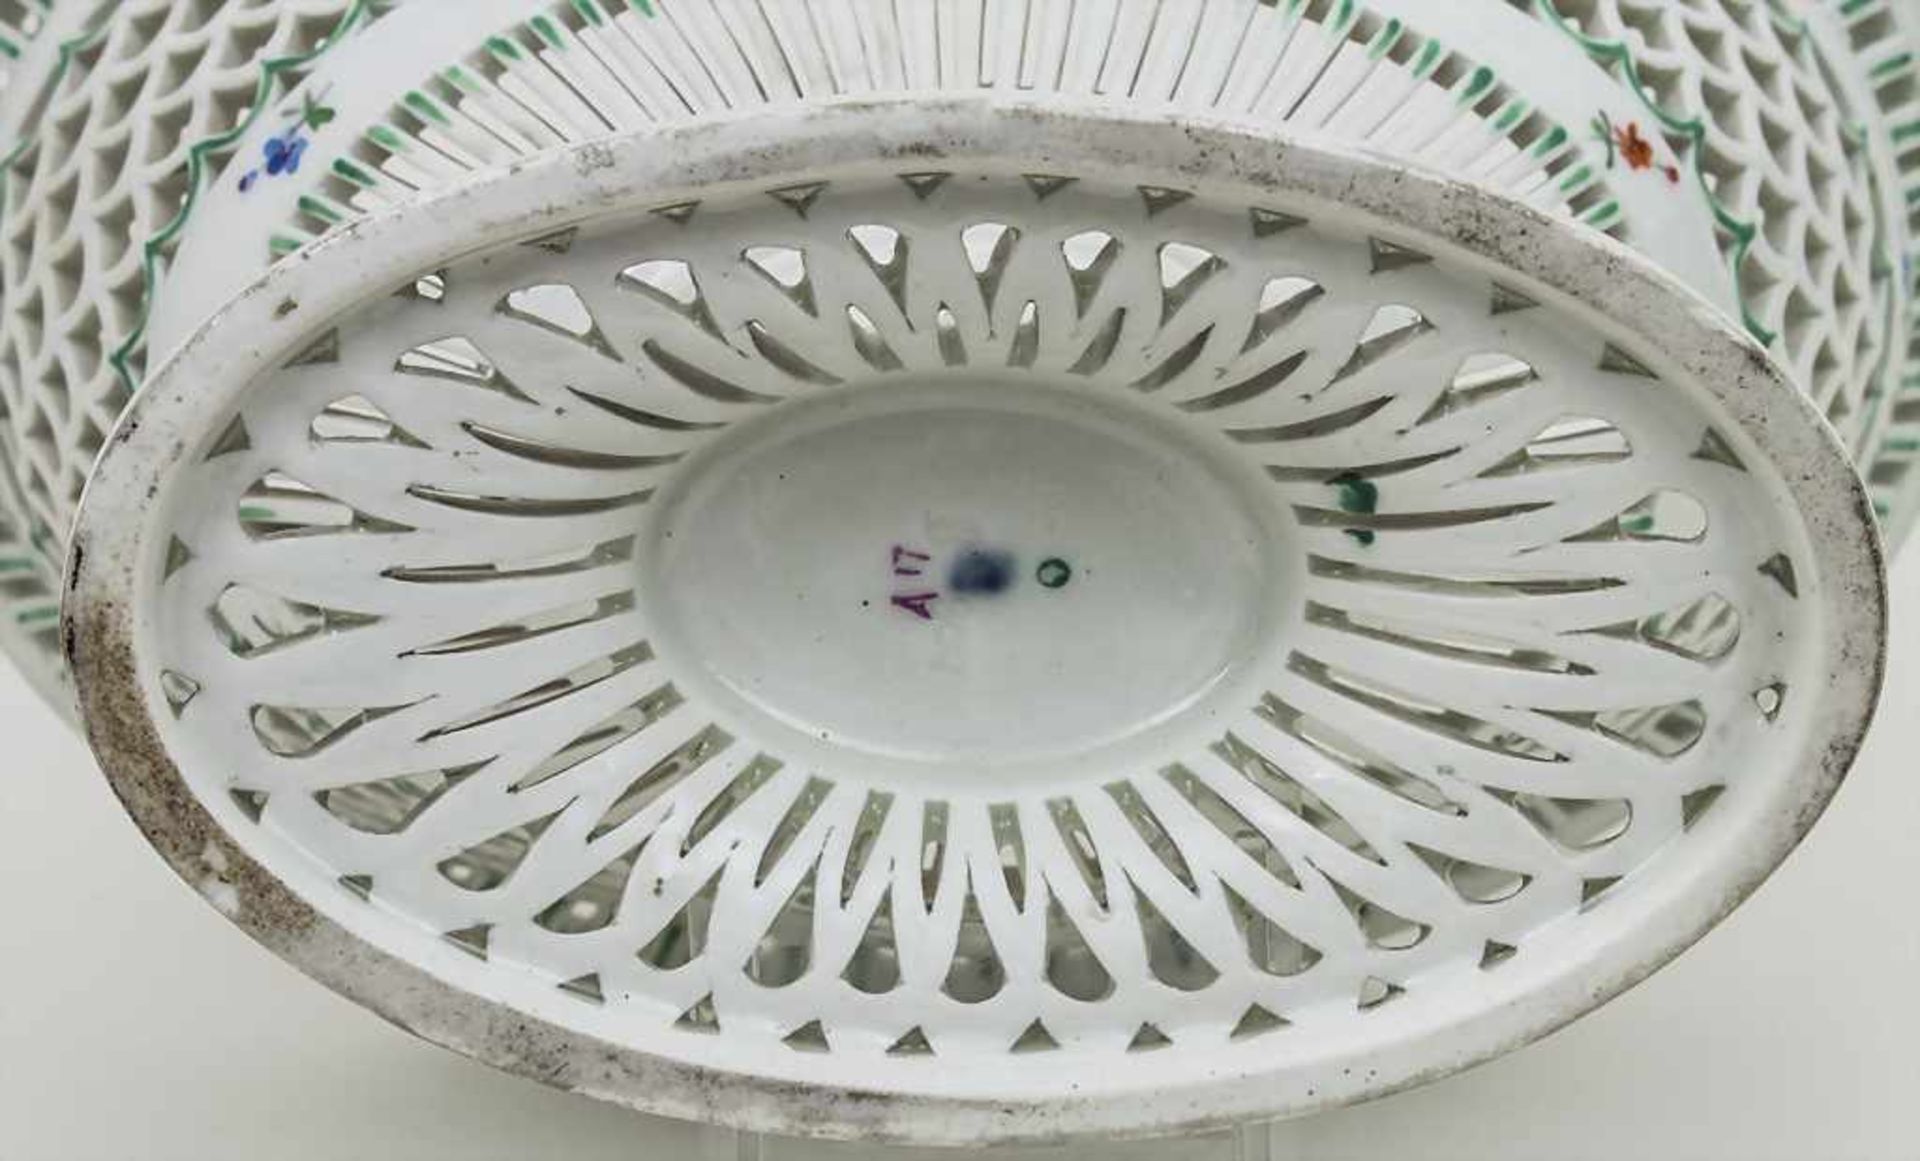 Ovale korbwandige Fußschale / An oval footed bowl, Wien, Ende 18. Jh. Material: Porzellan, weiß, - Image 3 of 3